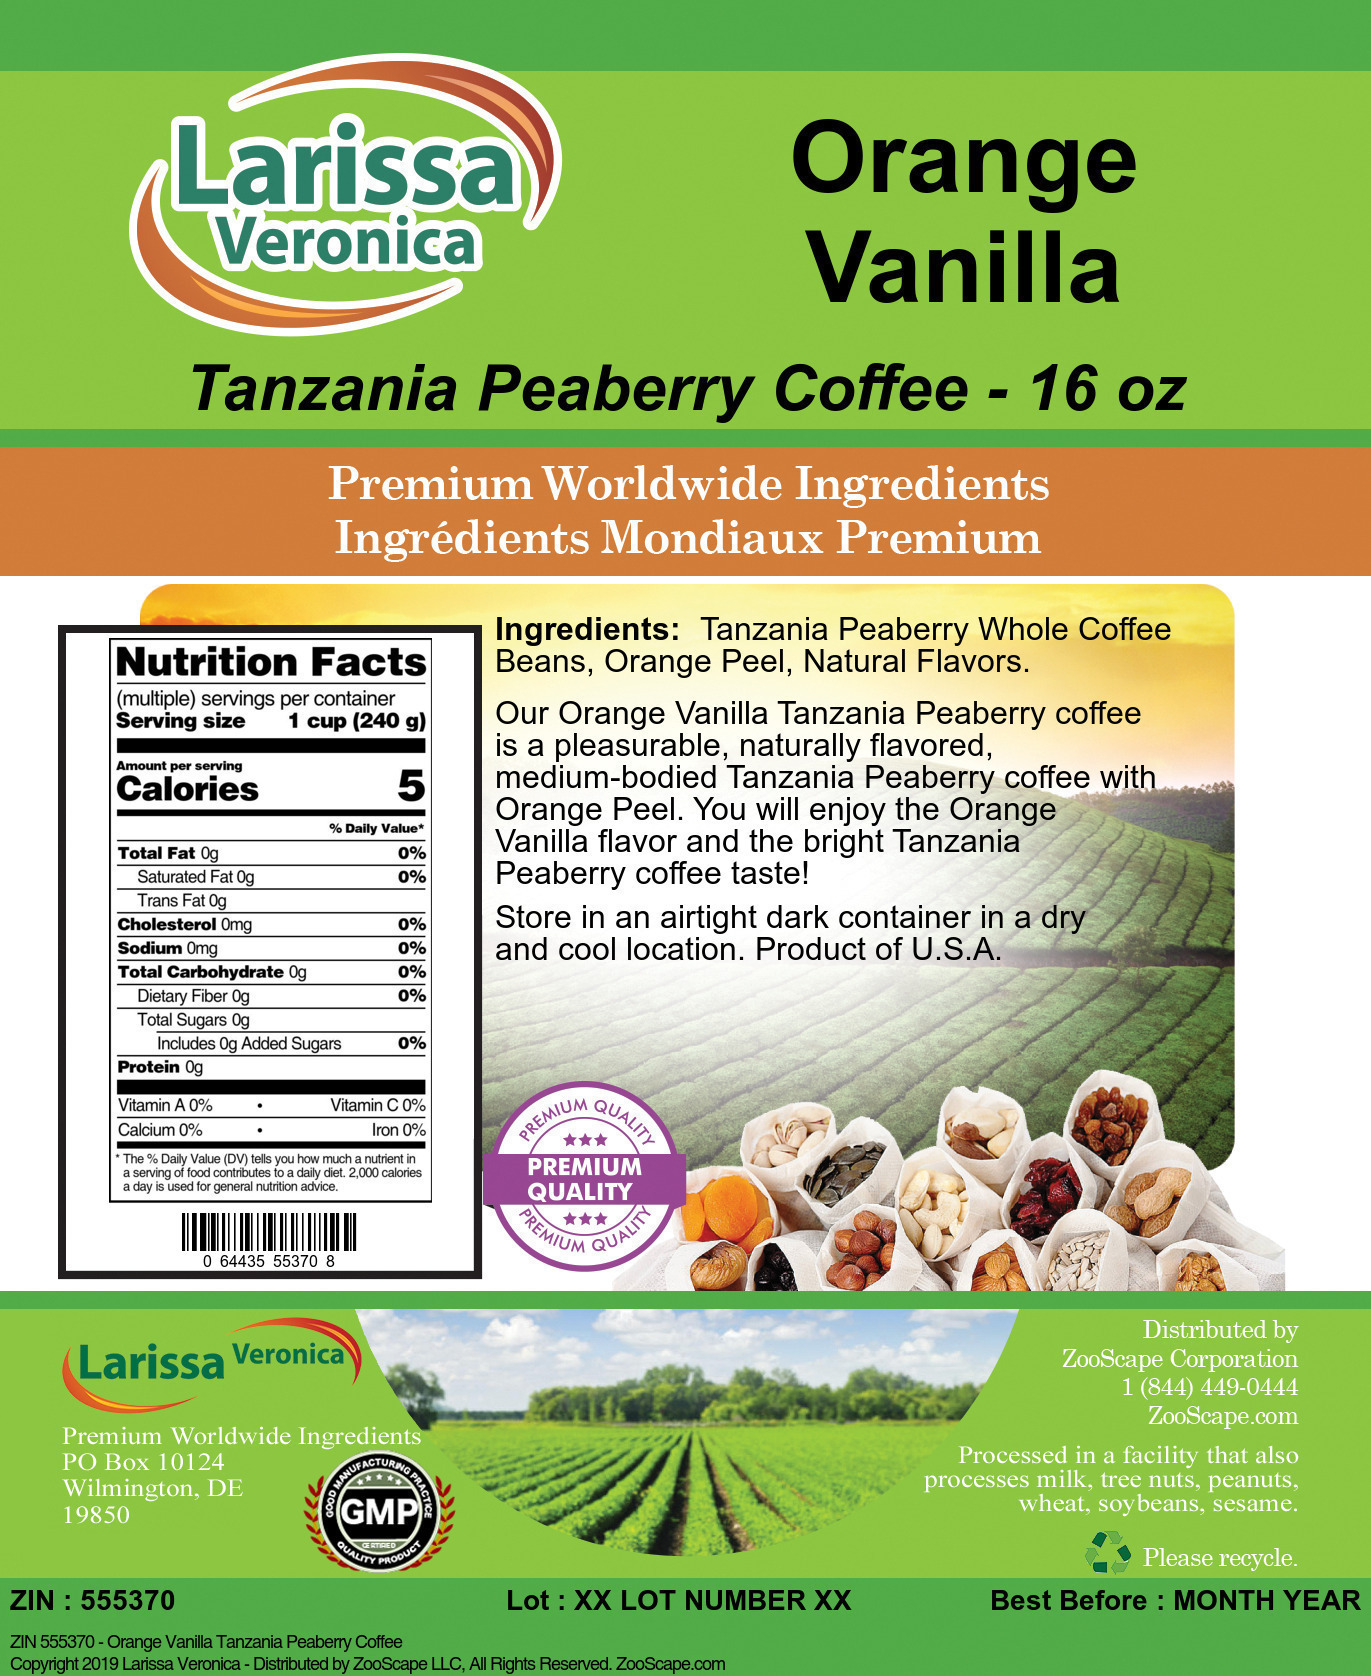 Orange Vanilla Tanzania Peaberry Coffee - Label